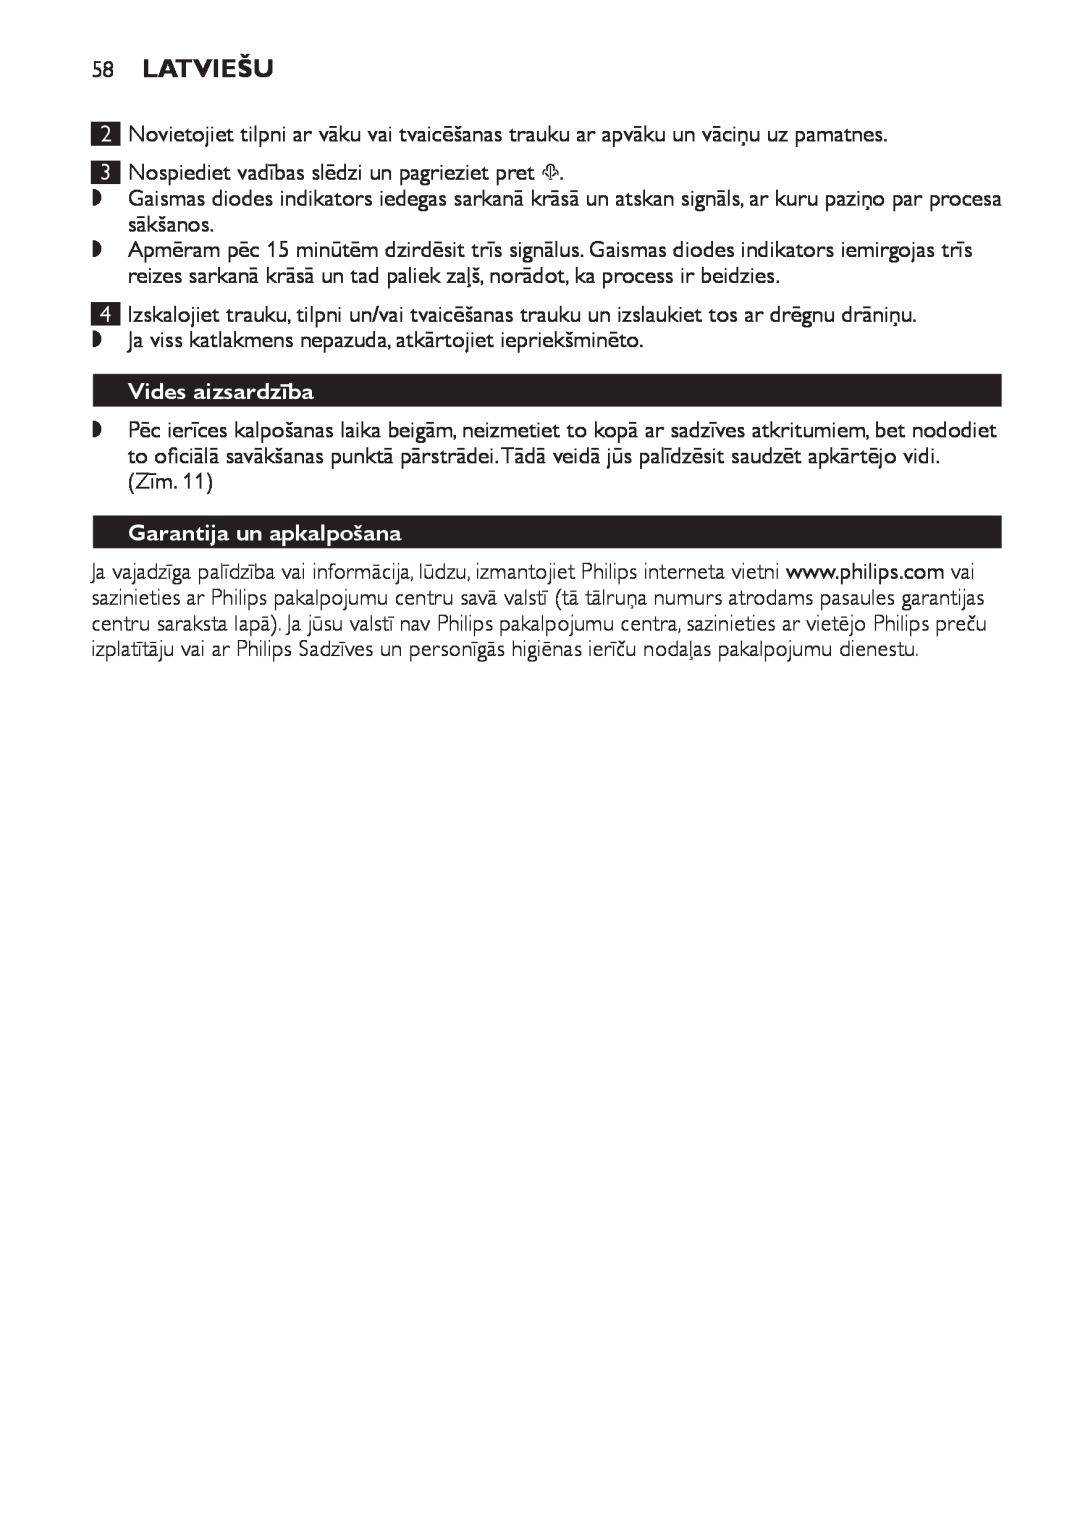 Philips SCF280 manual Latviešu, Vides aizsardzība, Garantija un apkalpošana 